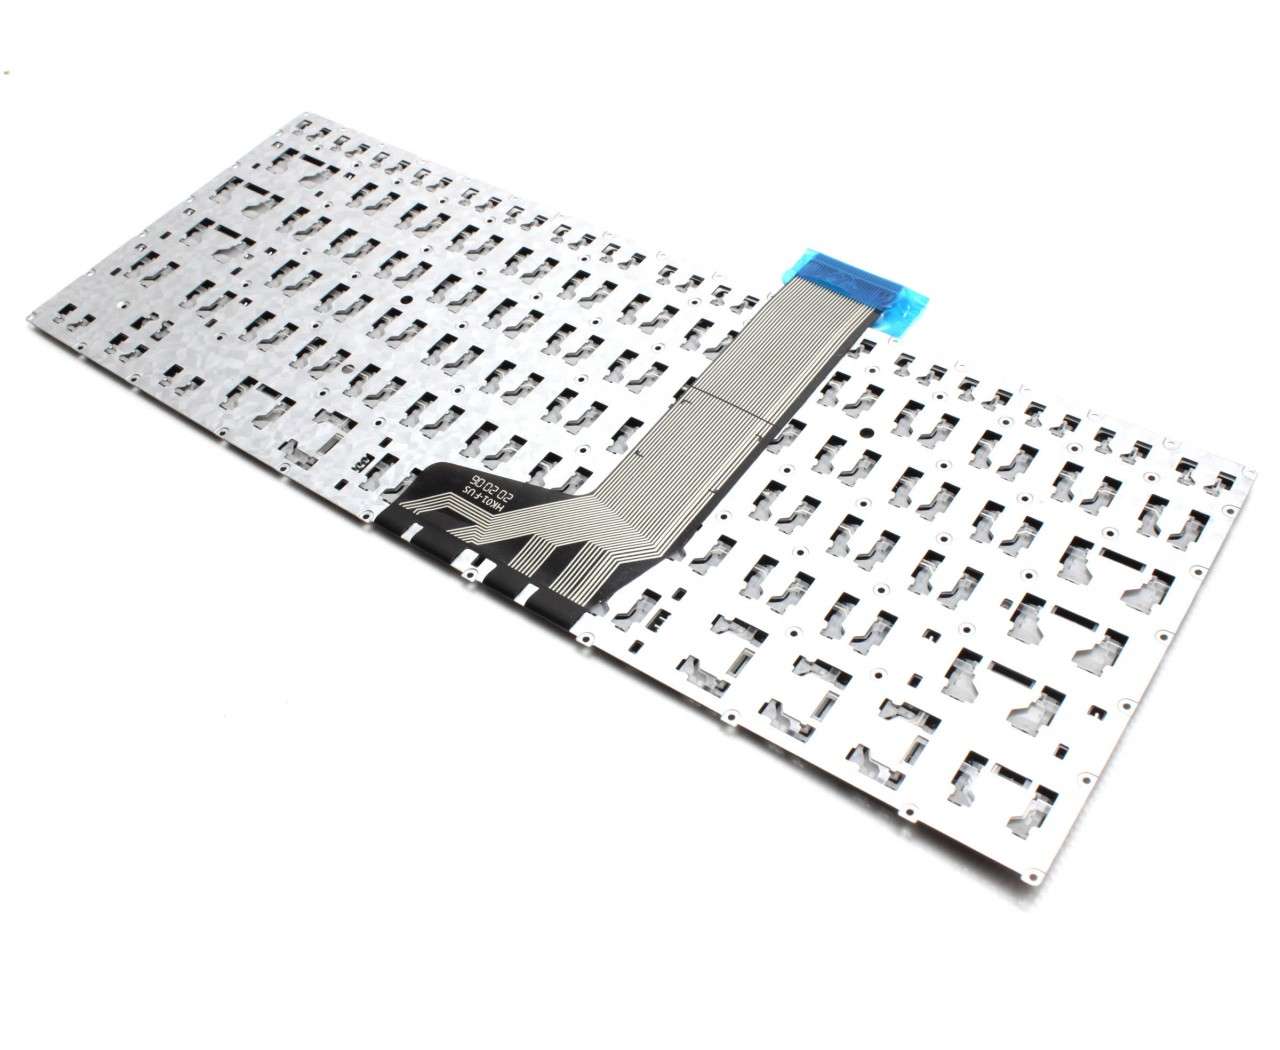 Tastatura Asus VivoBook S410UA layout US fara rama enter mic